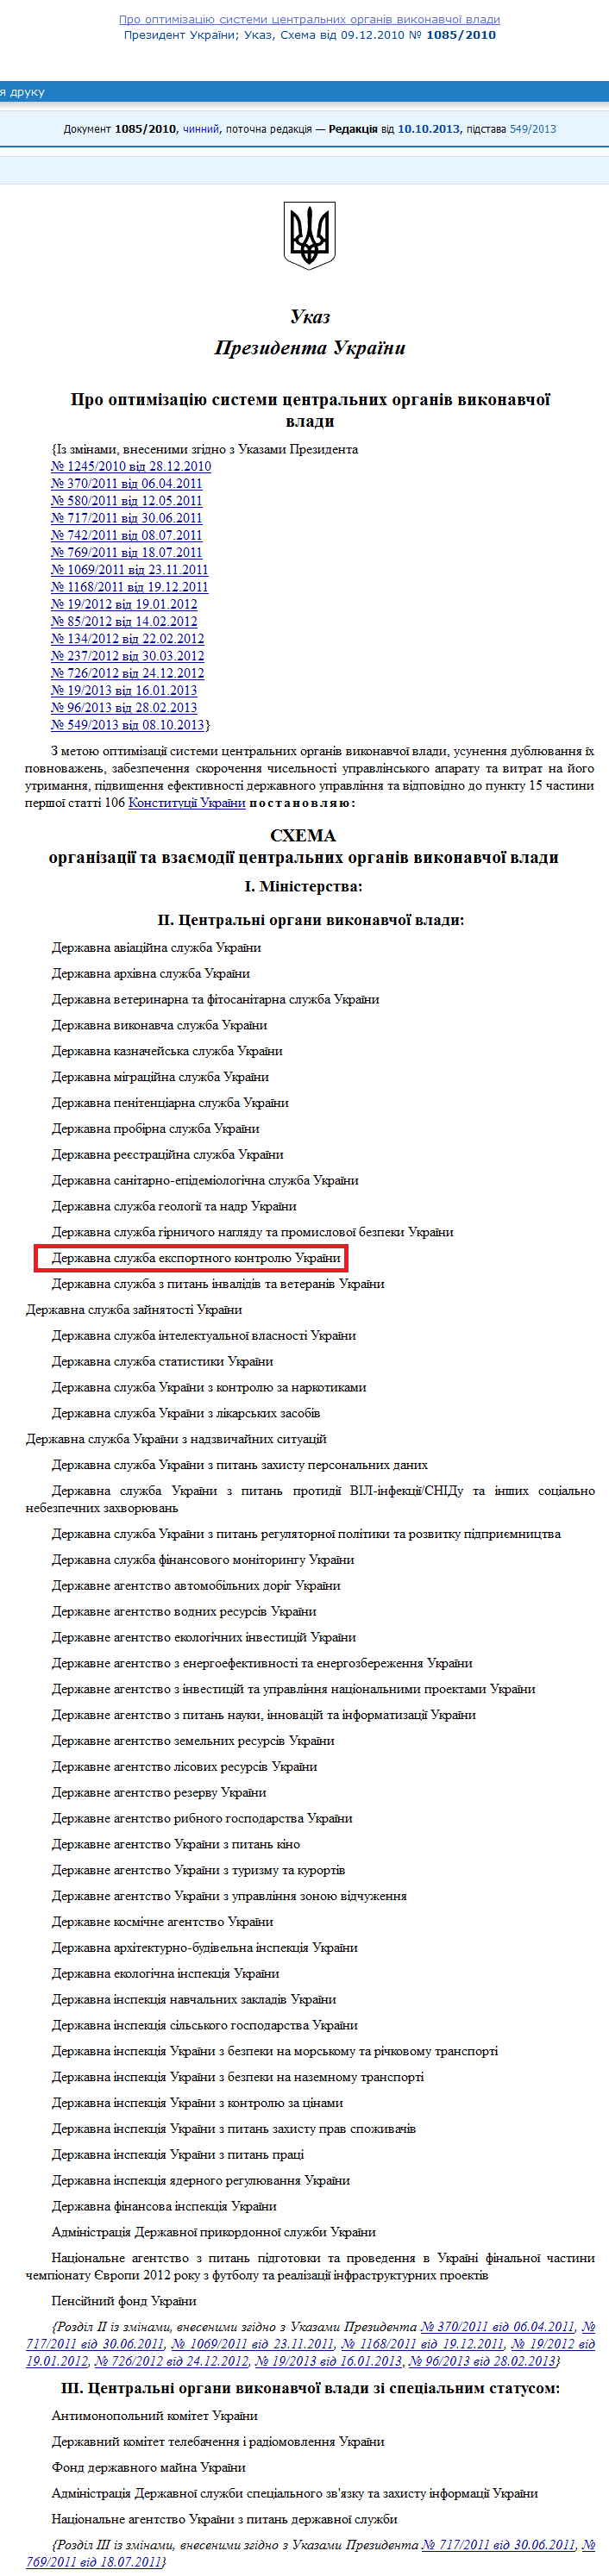 http://zakon4.rada.gov.ua/laws/show/1085/2010